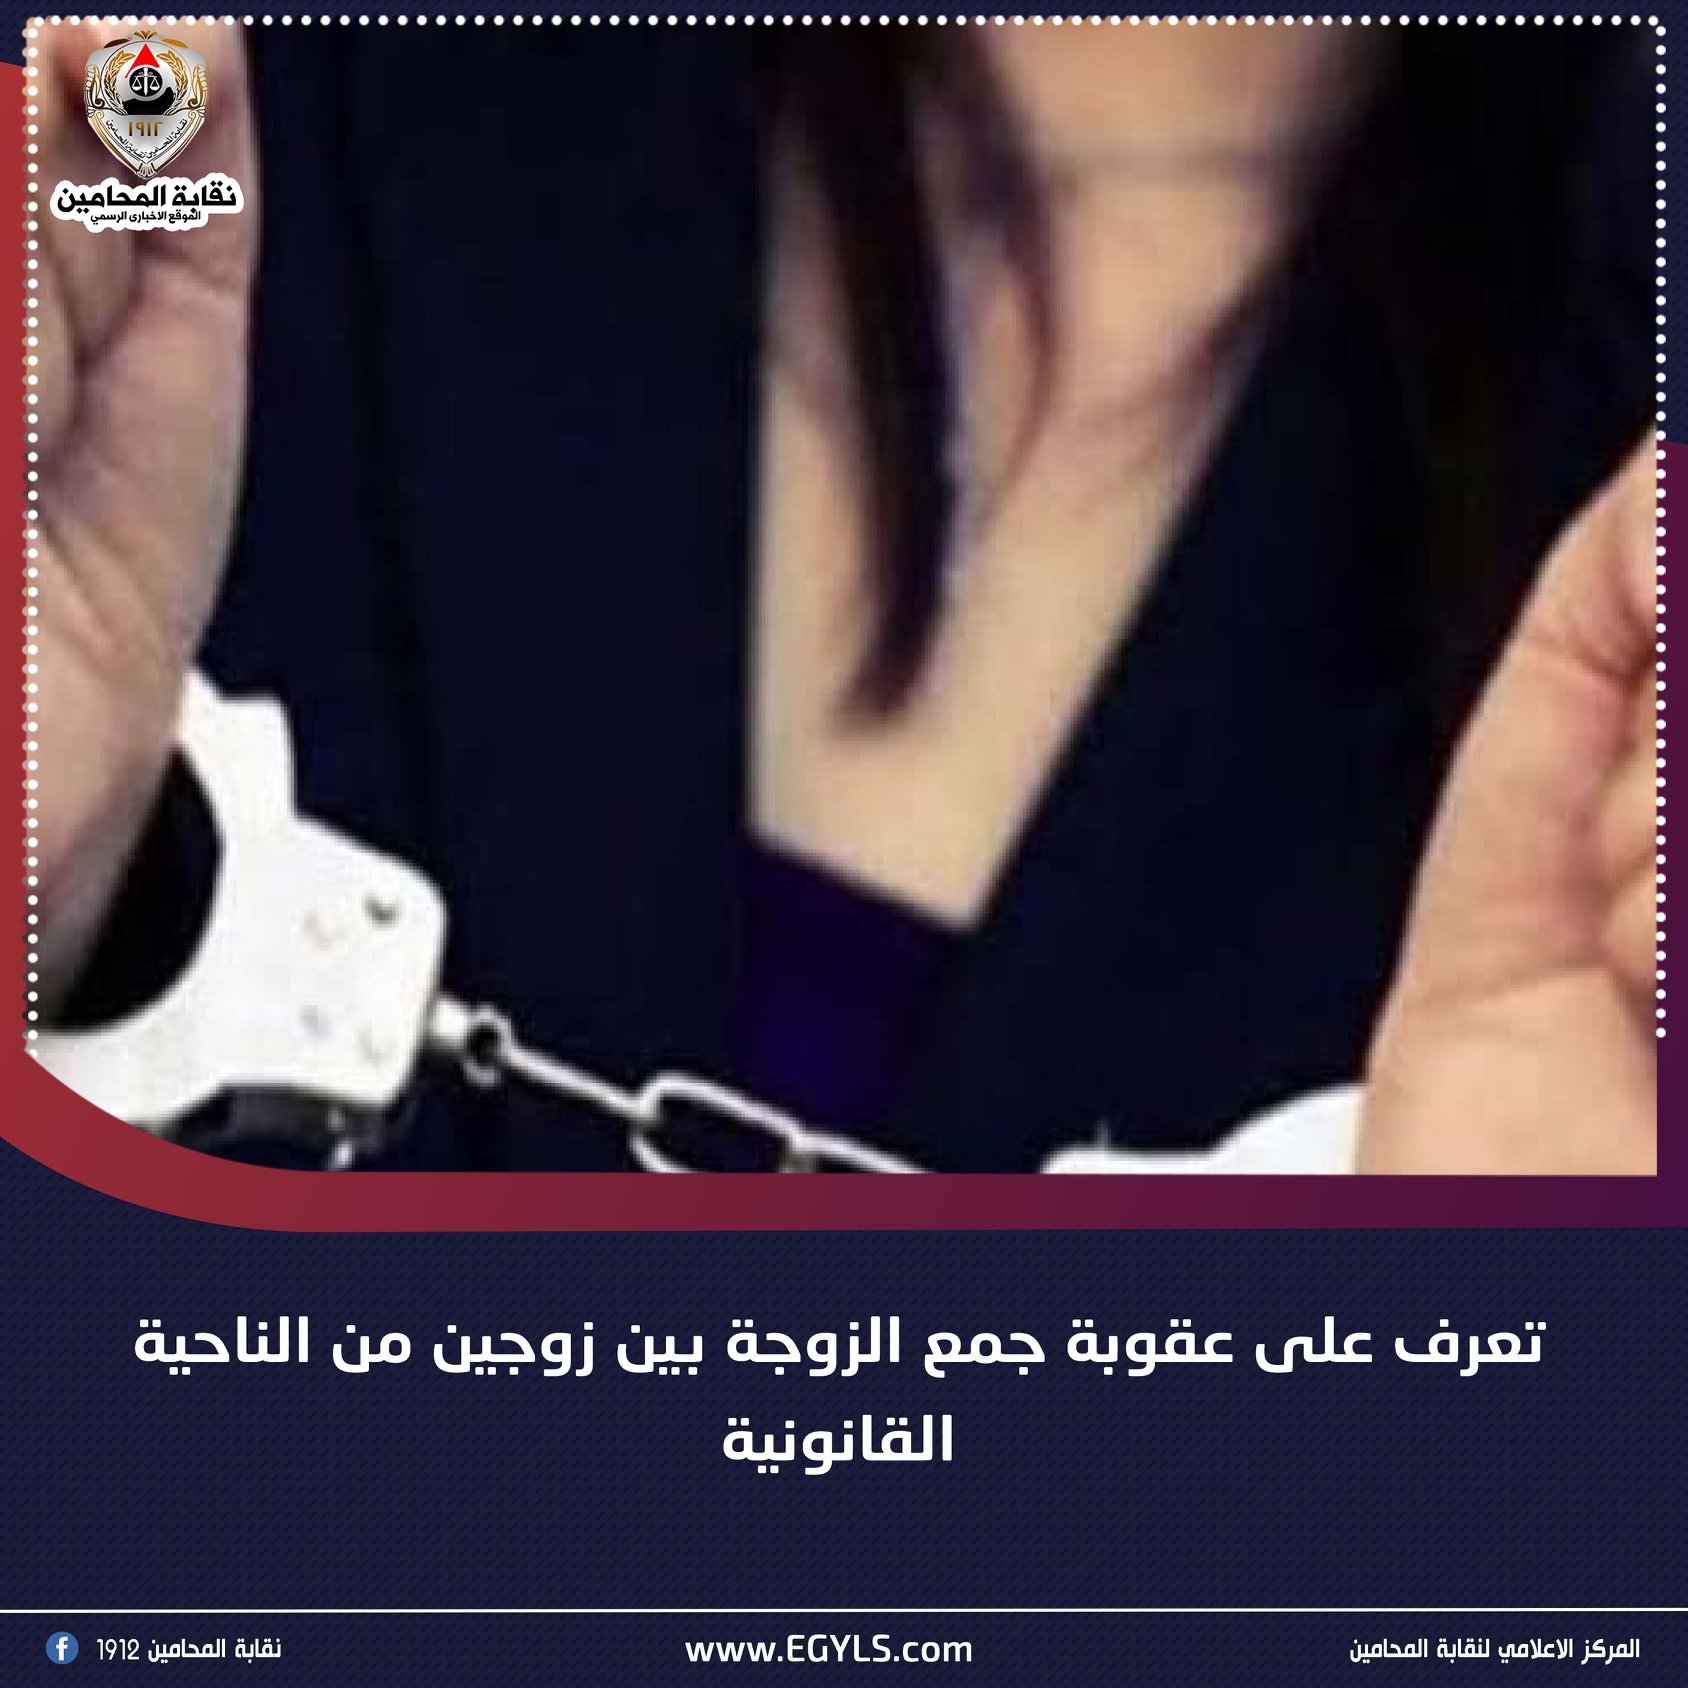 جريمة الجمع بين زوجين وعقوبتها في القانون الجنائي المصري